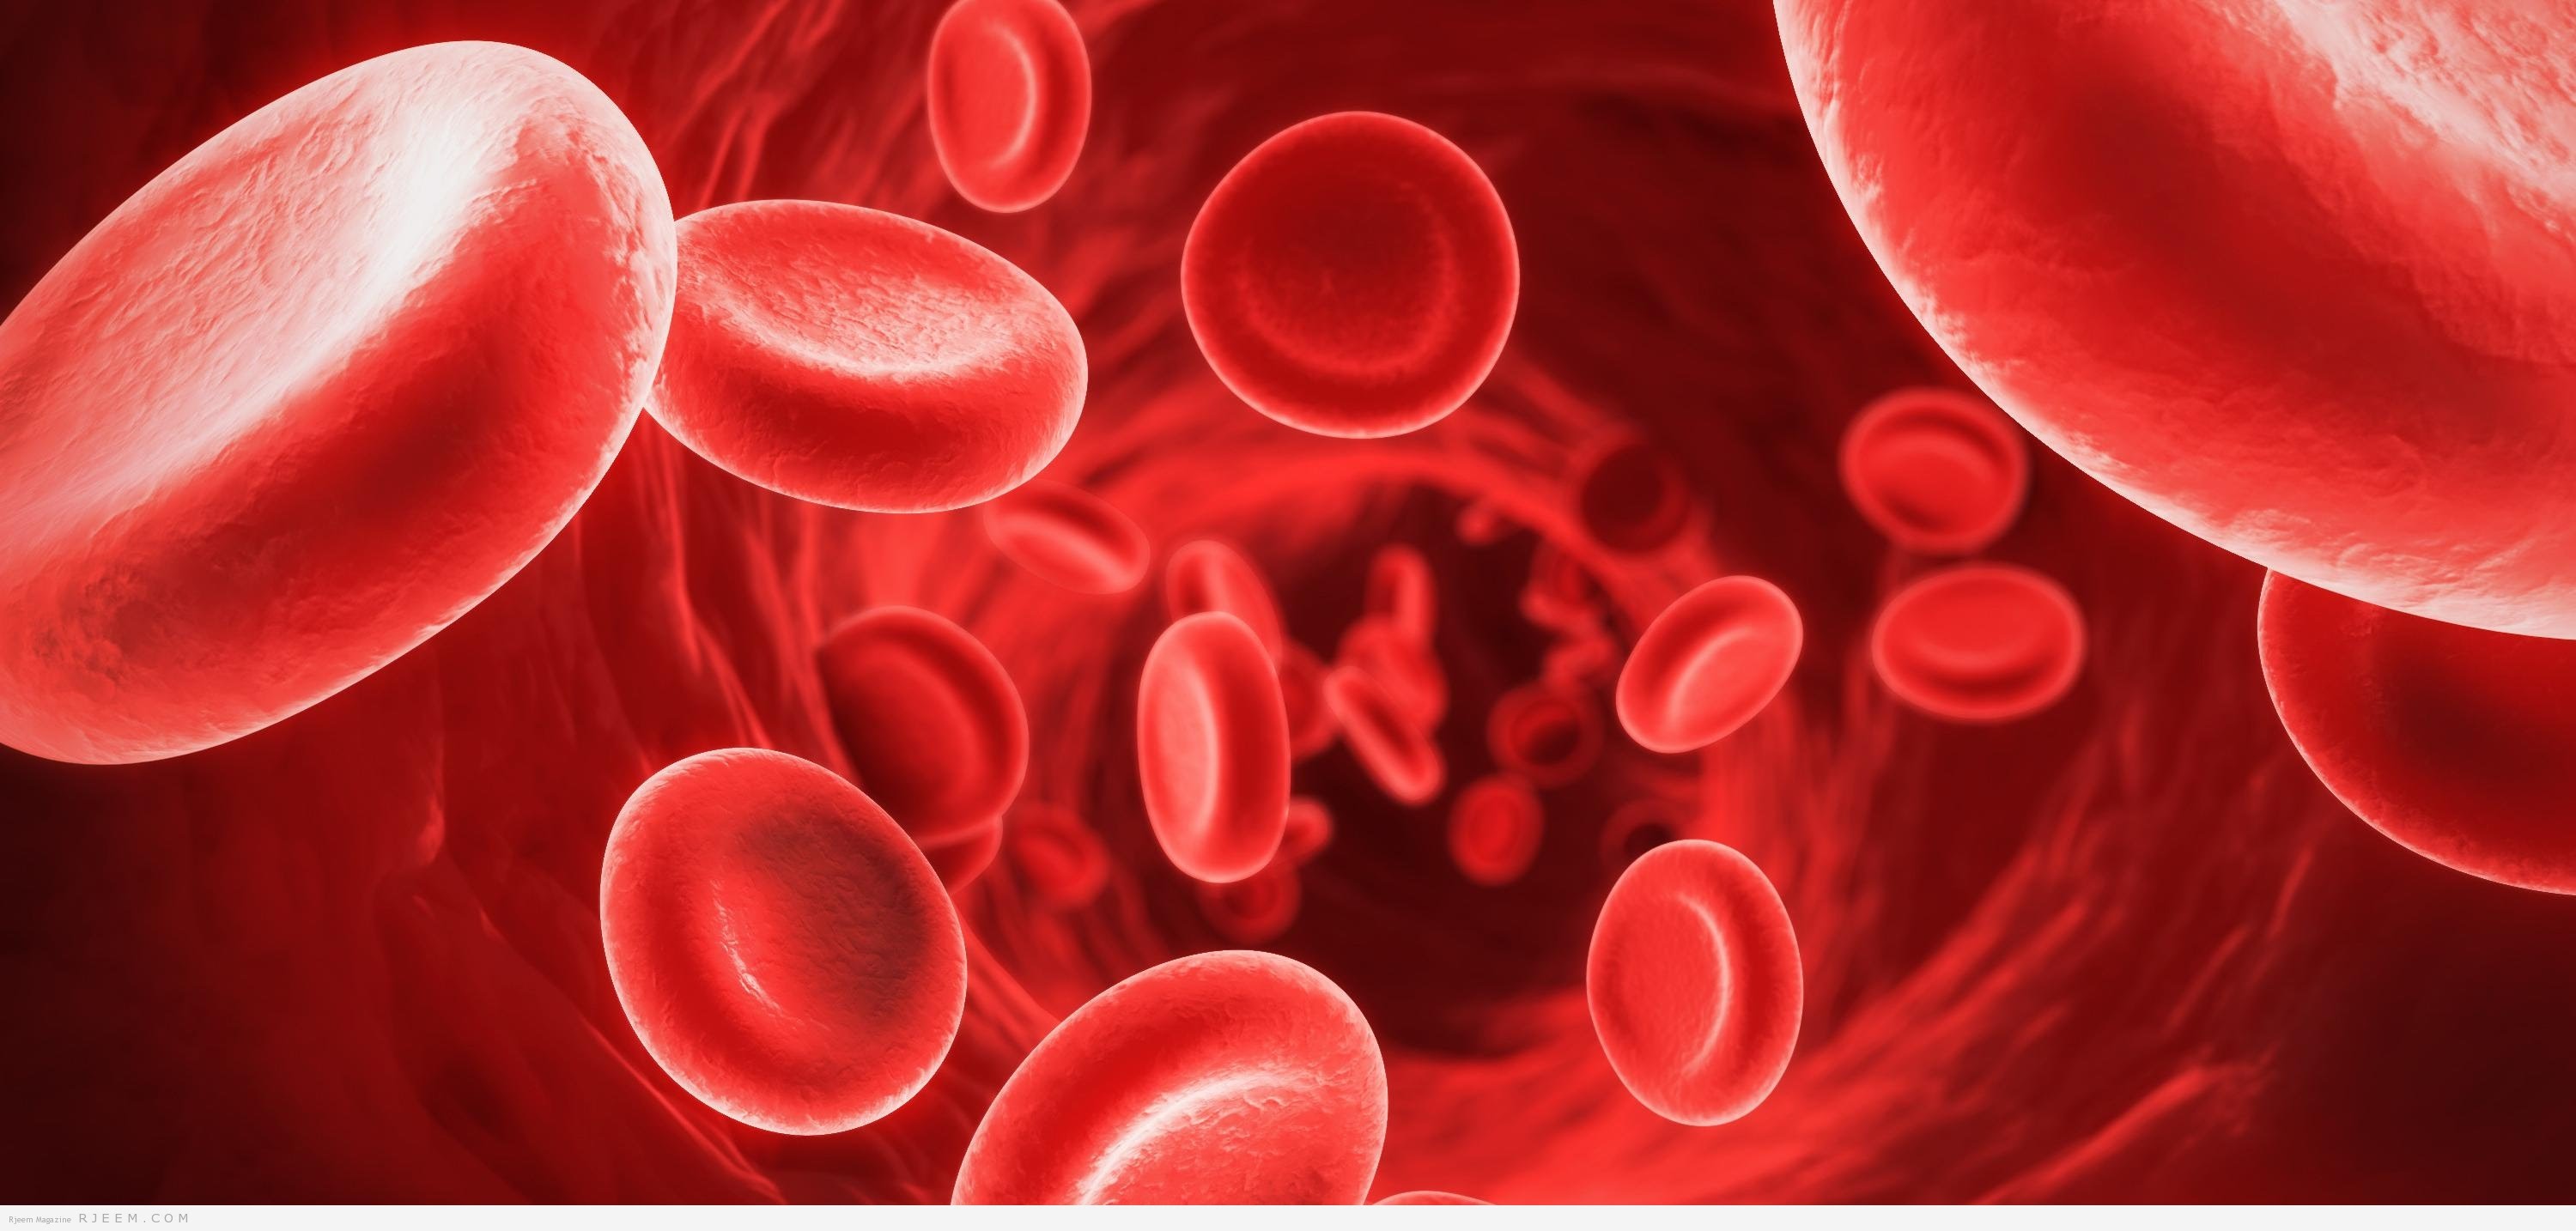 5 علامات تحذيرية قد تشير إلى إصابتك بفقر الدم